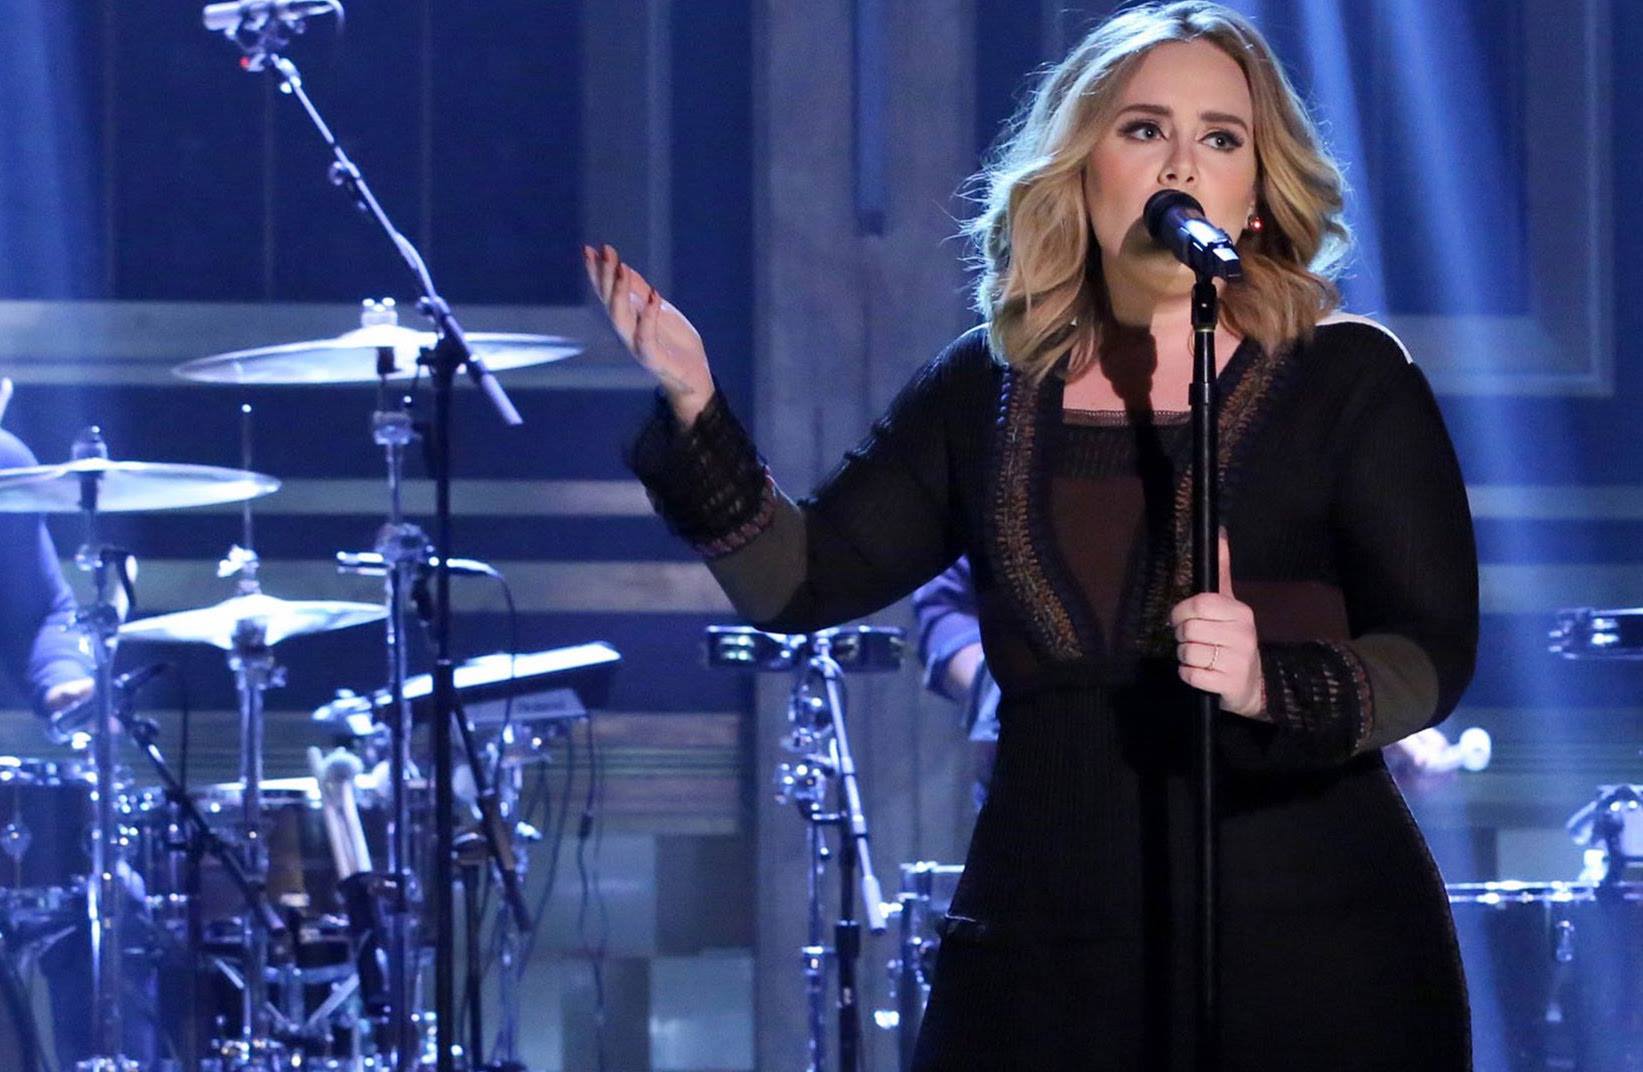 Durante show em Dublin, Adele se enrola em bandeira brasileira e promete:  “sua hora vai chegar”